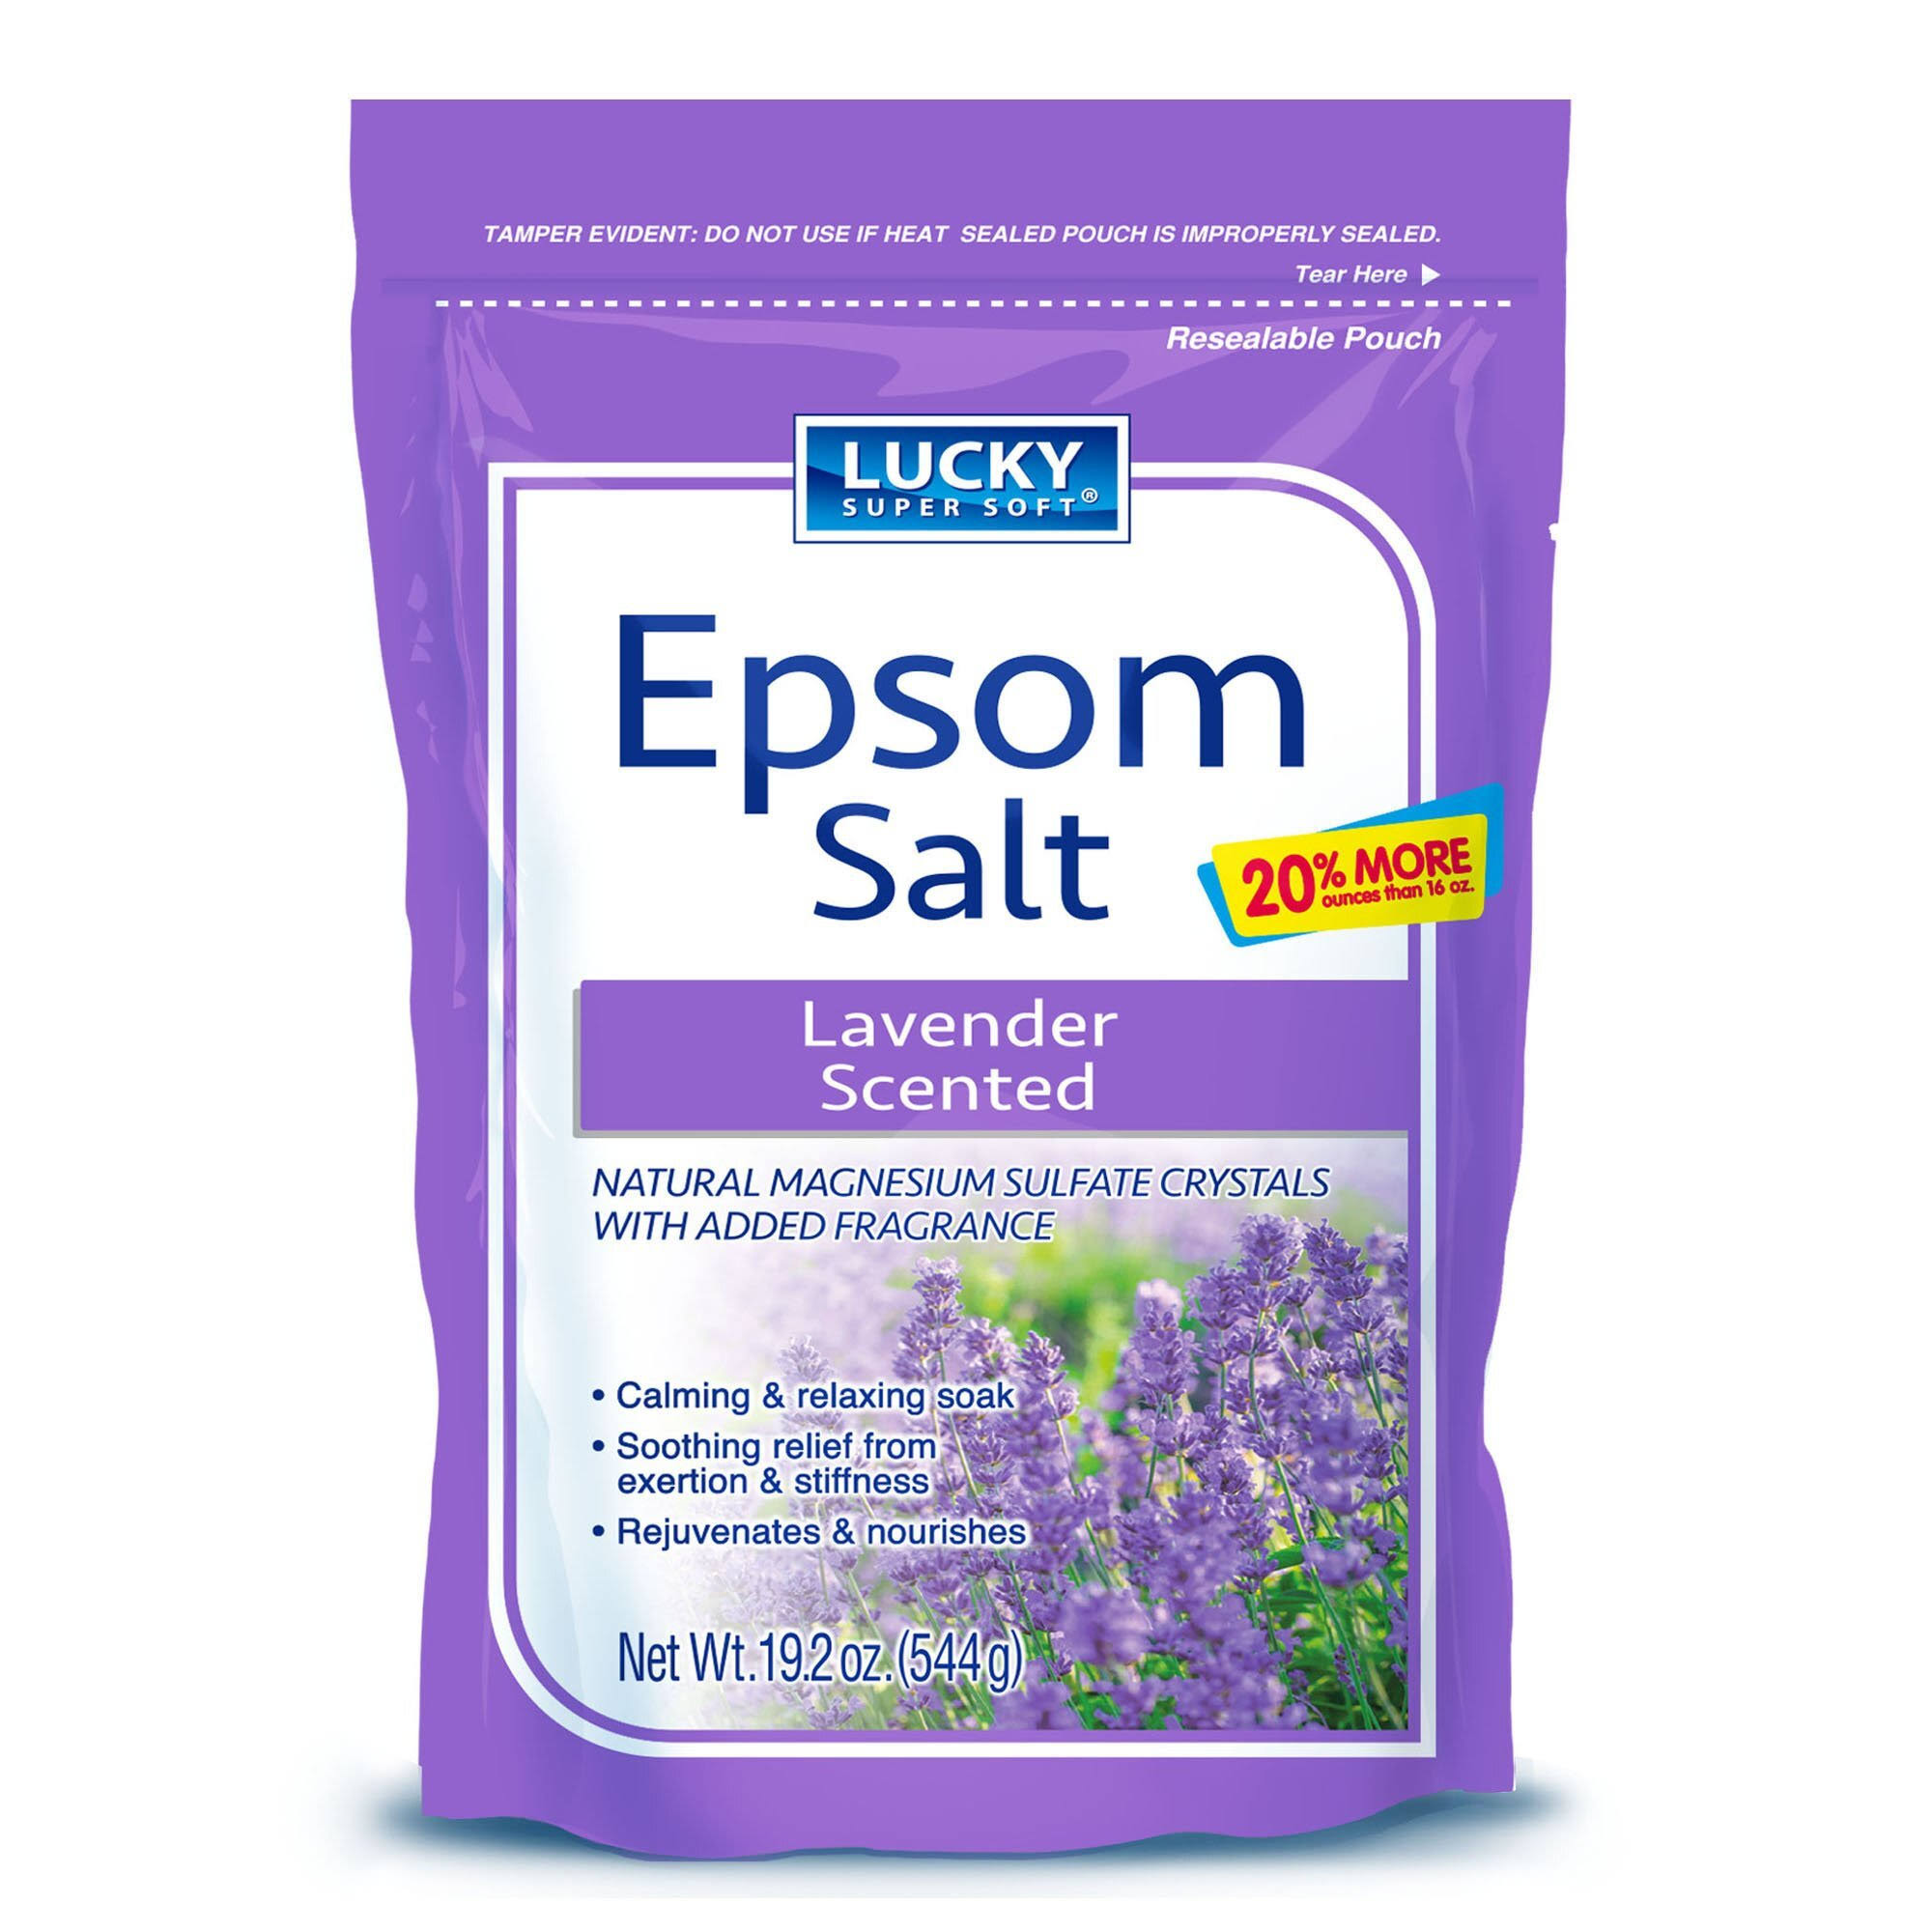 Lucky Super Soft Epsom Salt Lavender Scented, 570ml